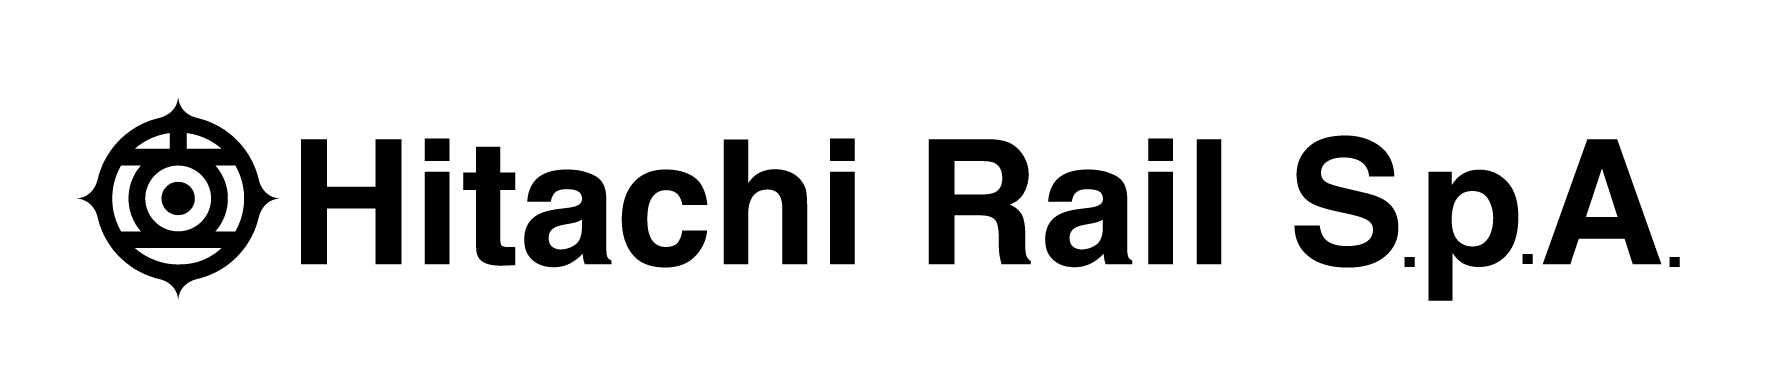 Hitachi Rail S.p.A[1]